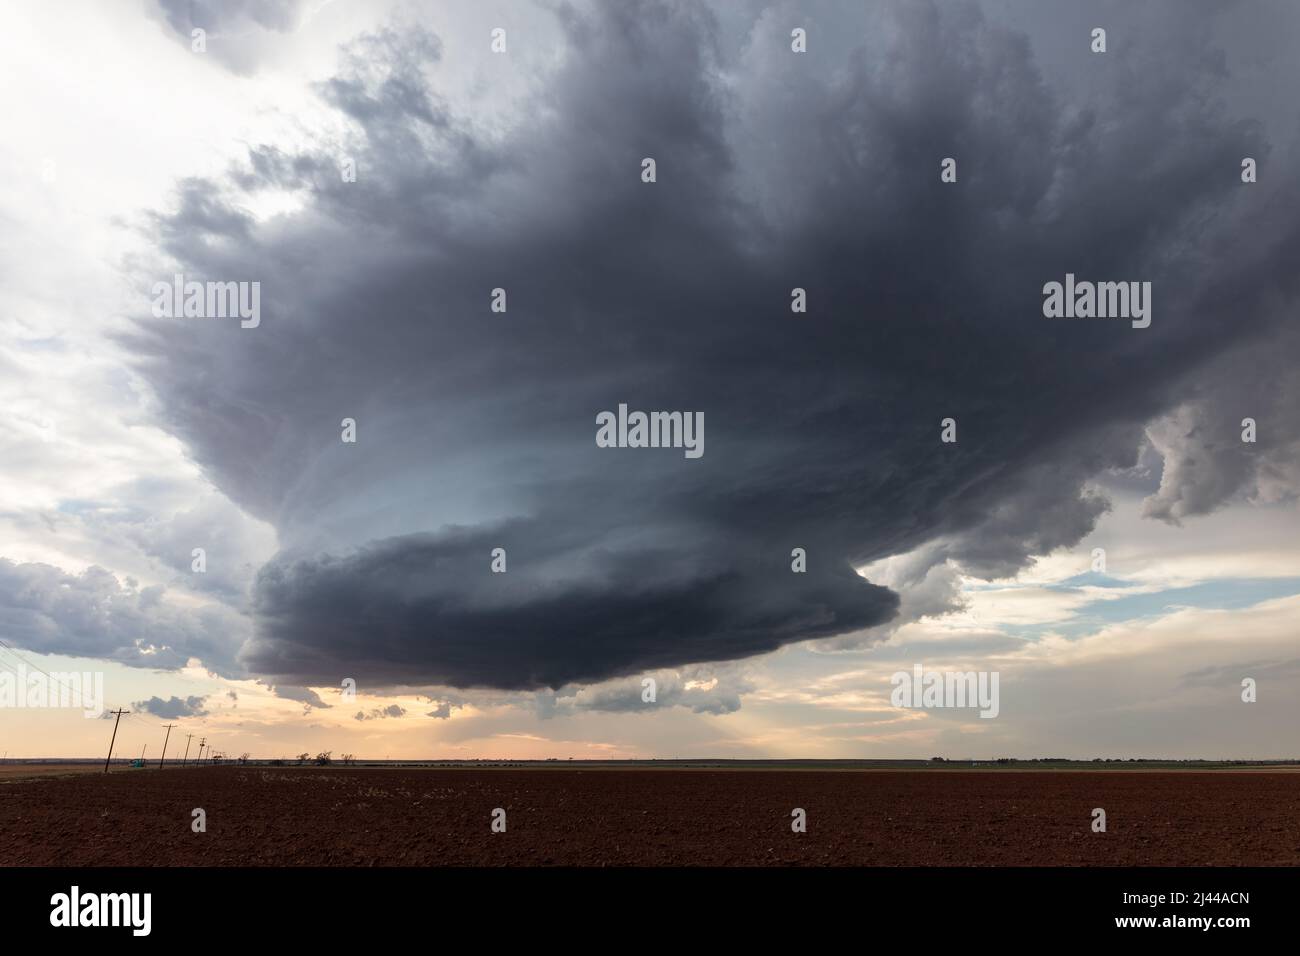 Ein supercell-Sturm über einem Feld während eines Unwetterereignisses in der Nähe von Amherst, USA Stockfoto